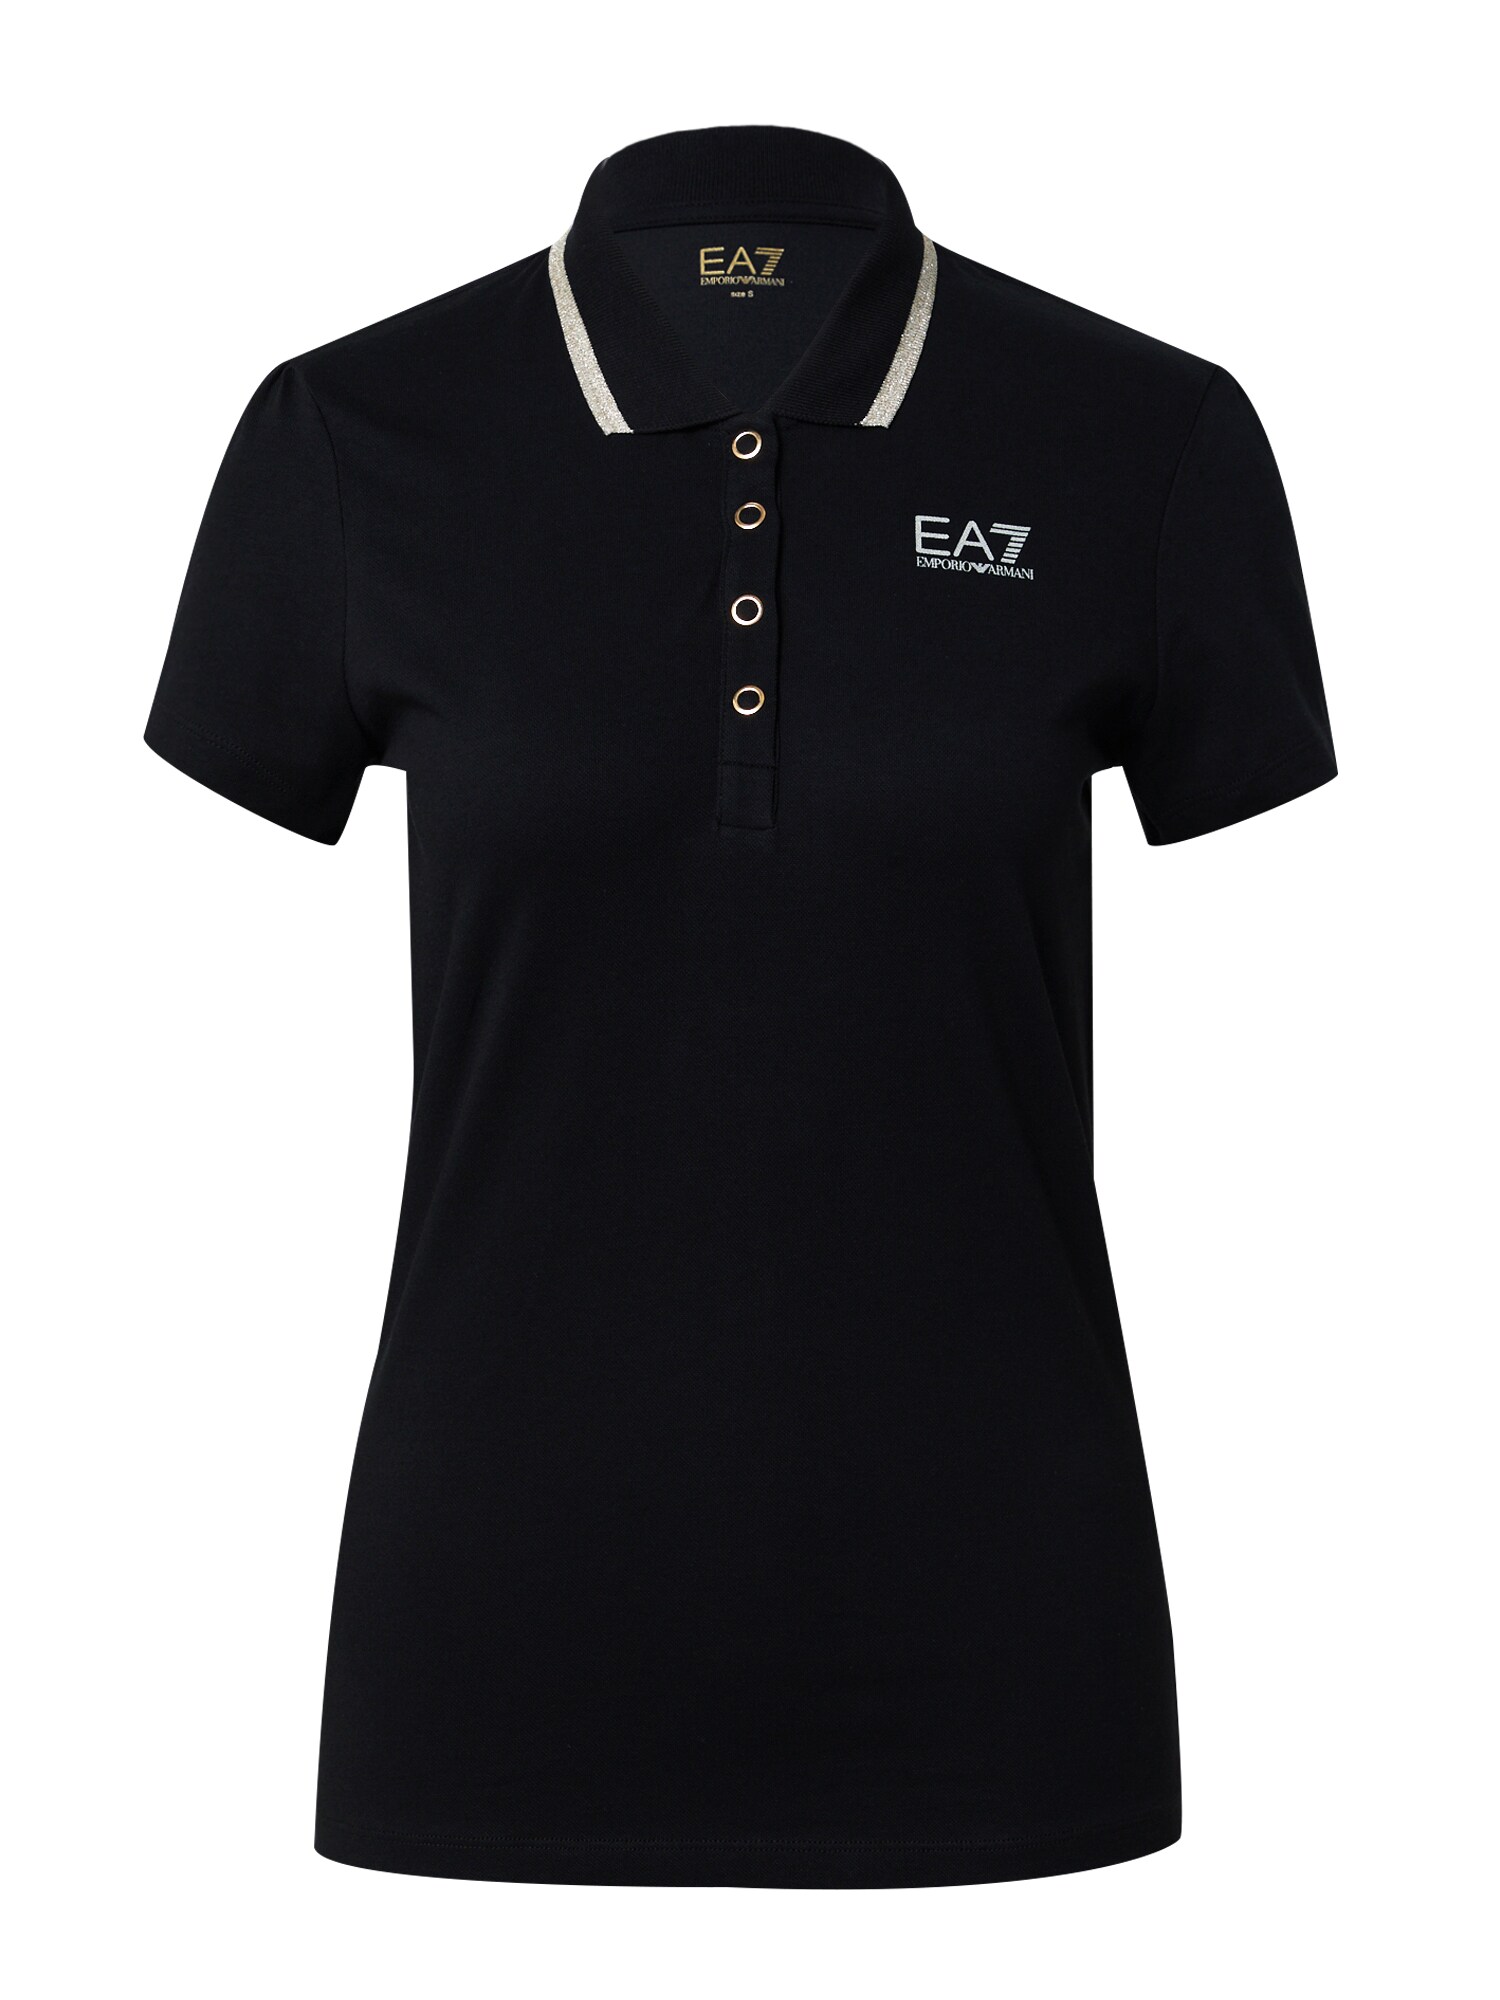 Жени > Дрехи > Тениски и топове > Тениски > Поло тениски EA7 Emporio Armani Тениска  злато / черно / бяло